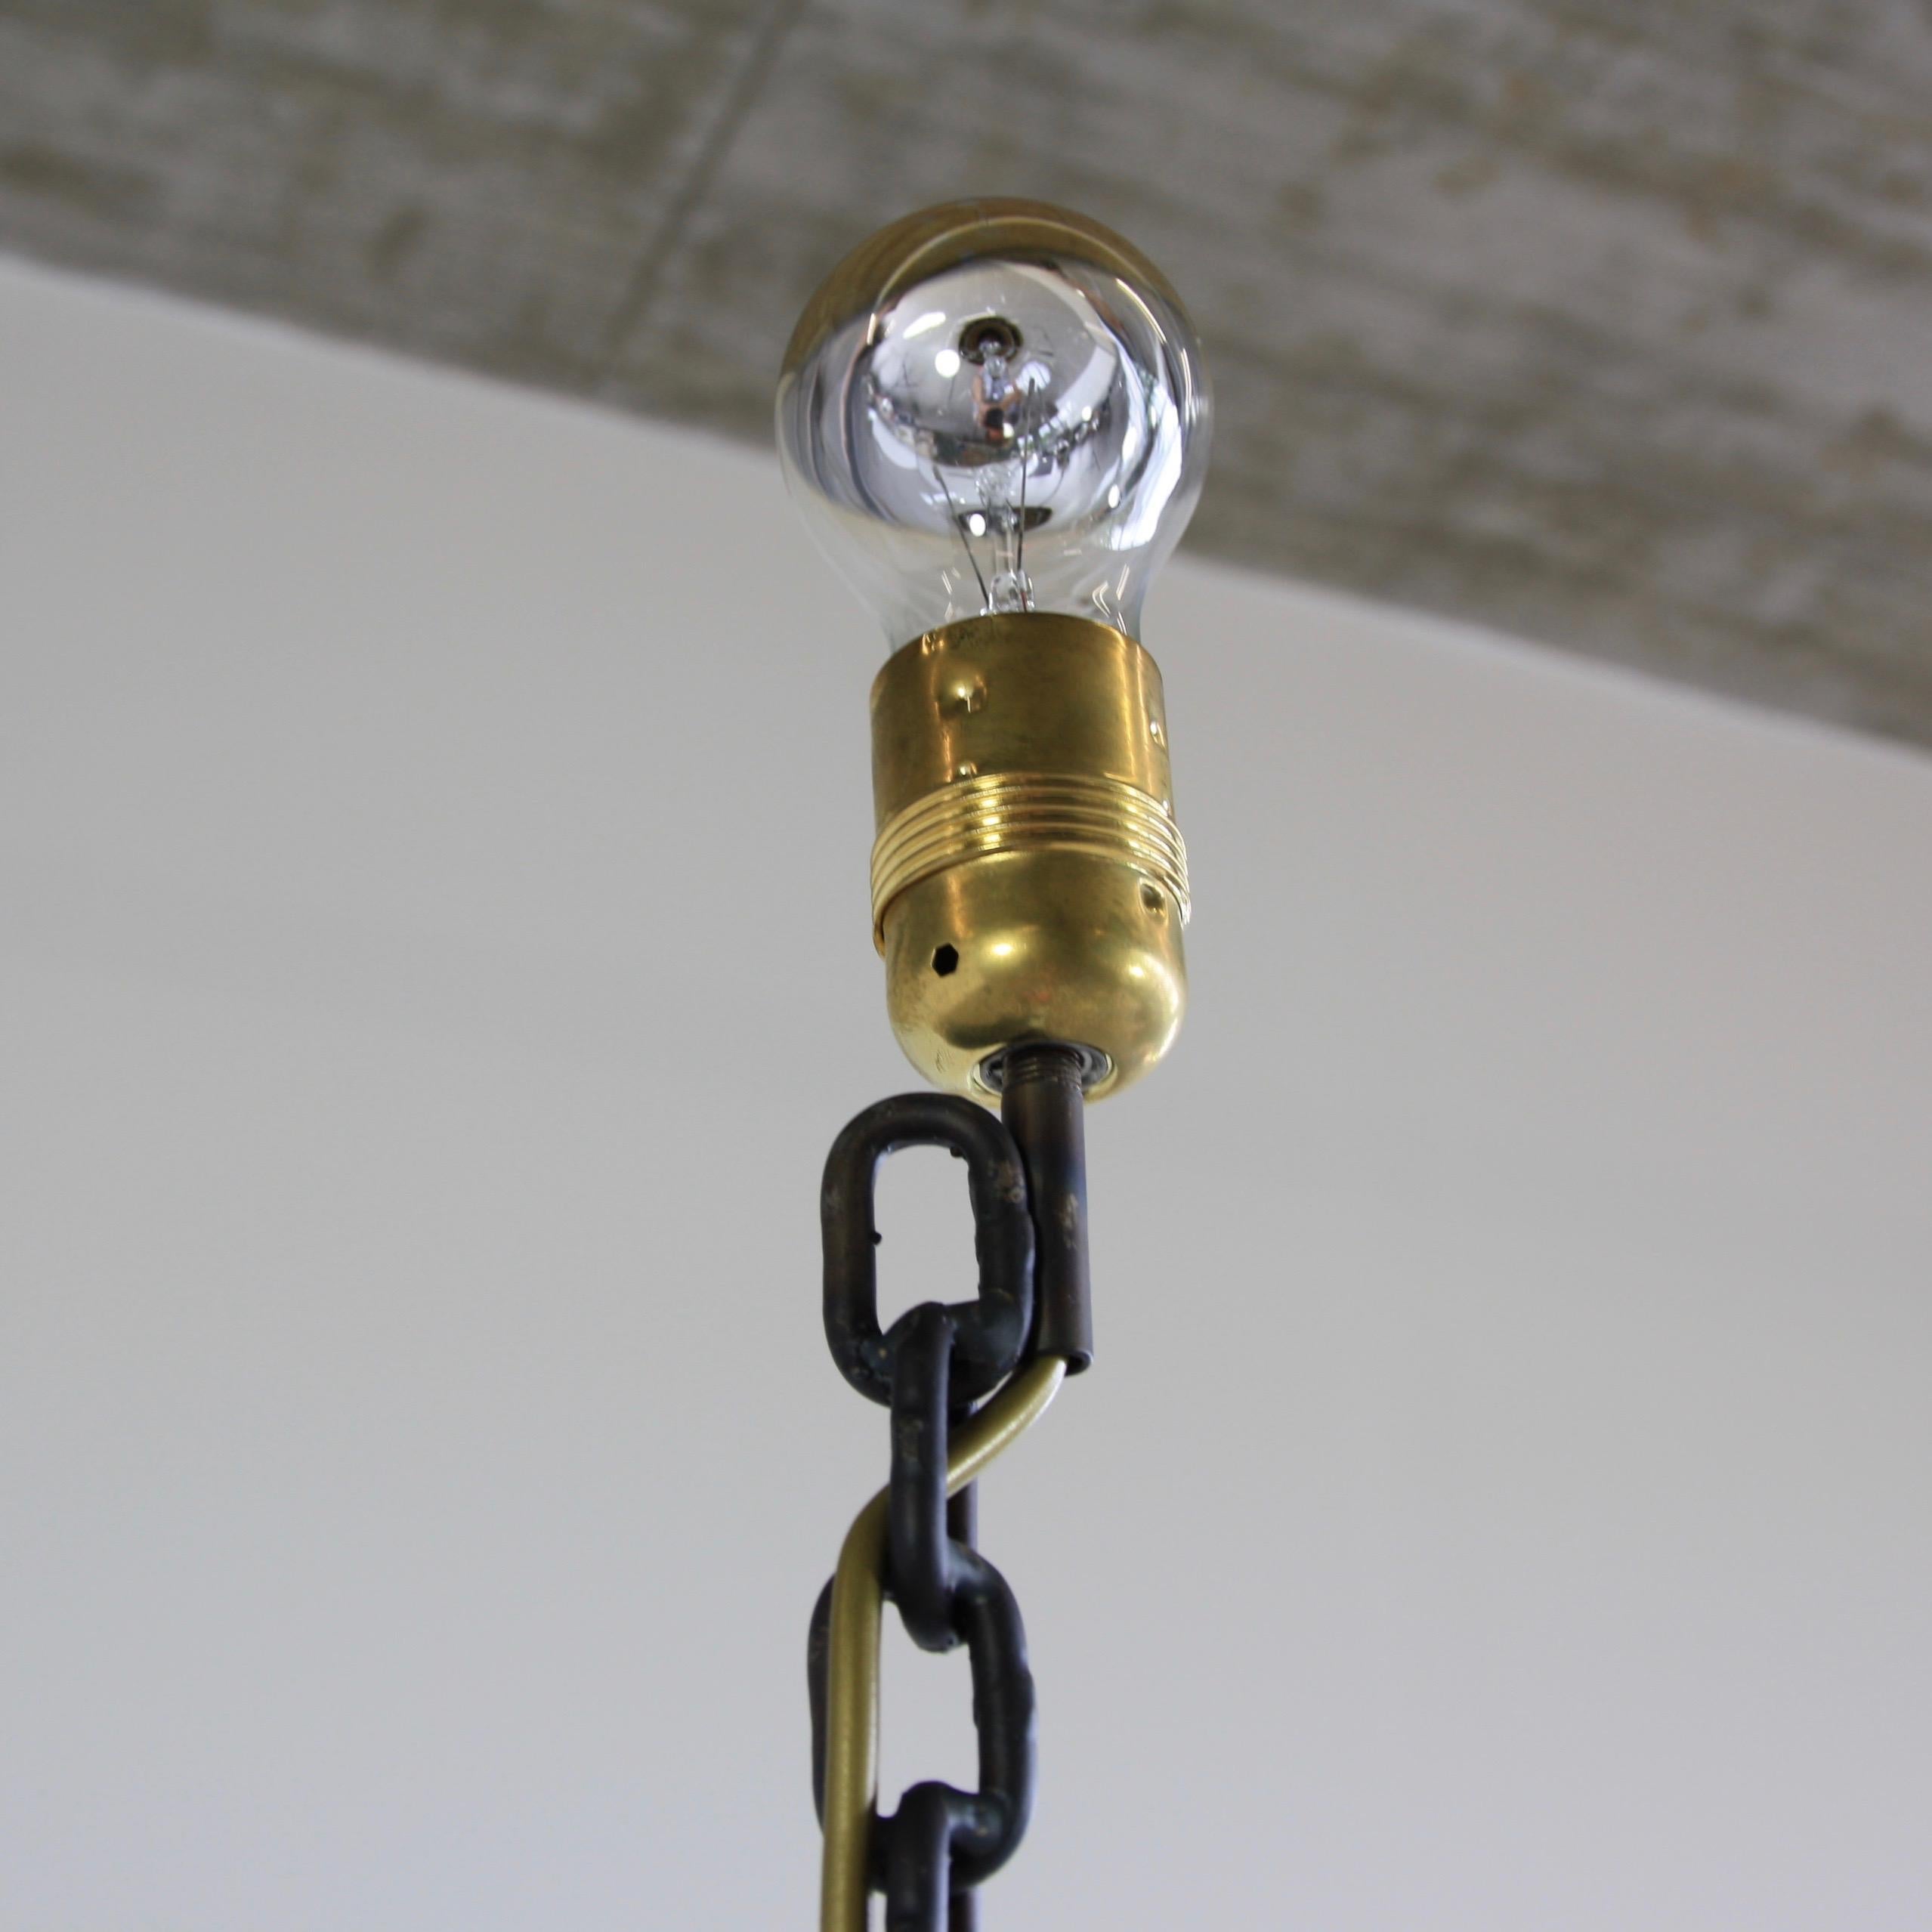 Private II Lampe des österreichischen Künstlers und Designers Franz West aus dem Jahr 1989:: Italien. 

Emaillierte und geschweißte Stehleuchte aus schwarzem Eisen. 

Das ist wichtig: Das ist das Original!!